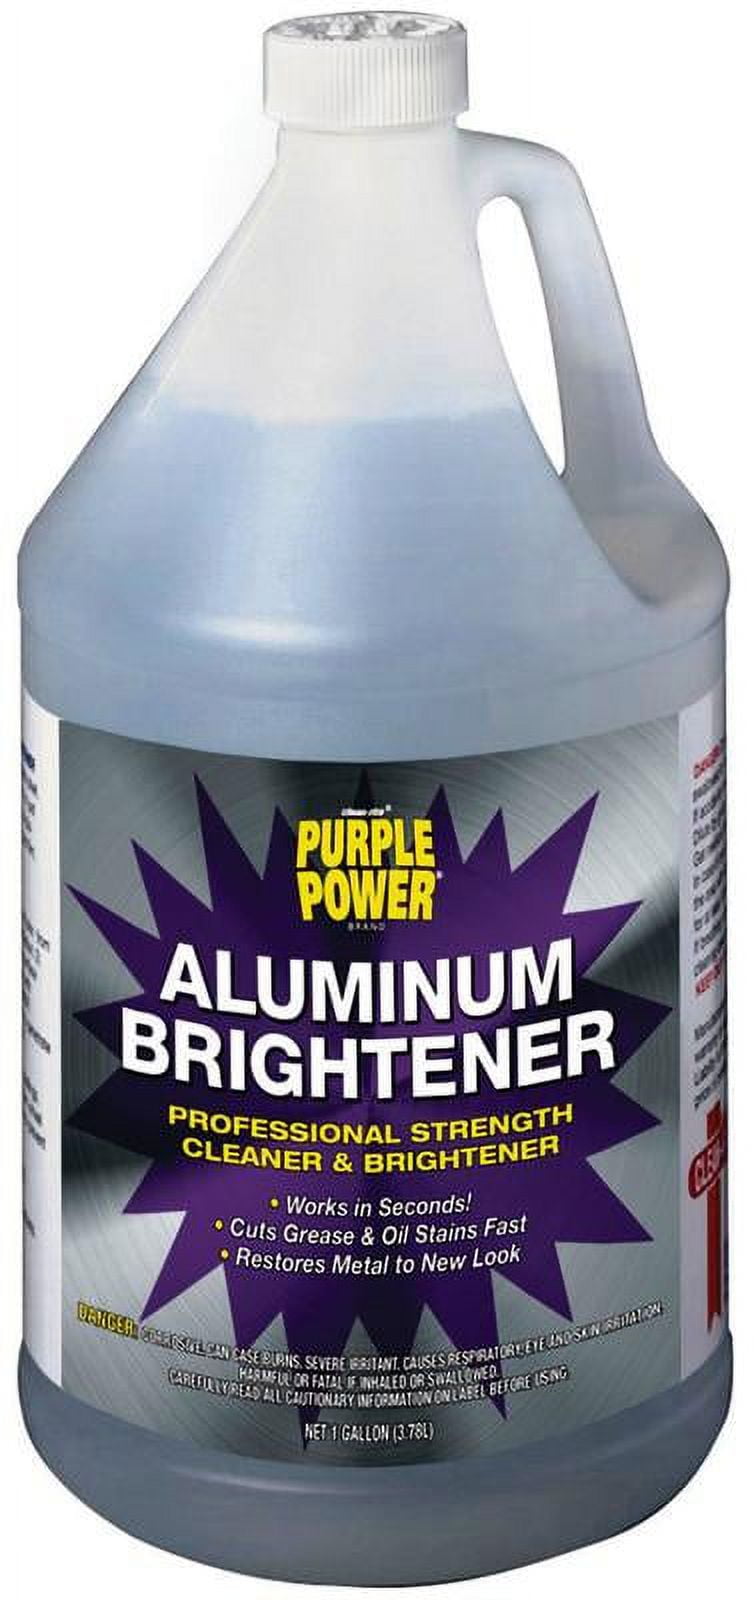 Advanced Formula Aluminum Brightener, 55gal